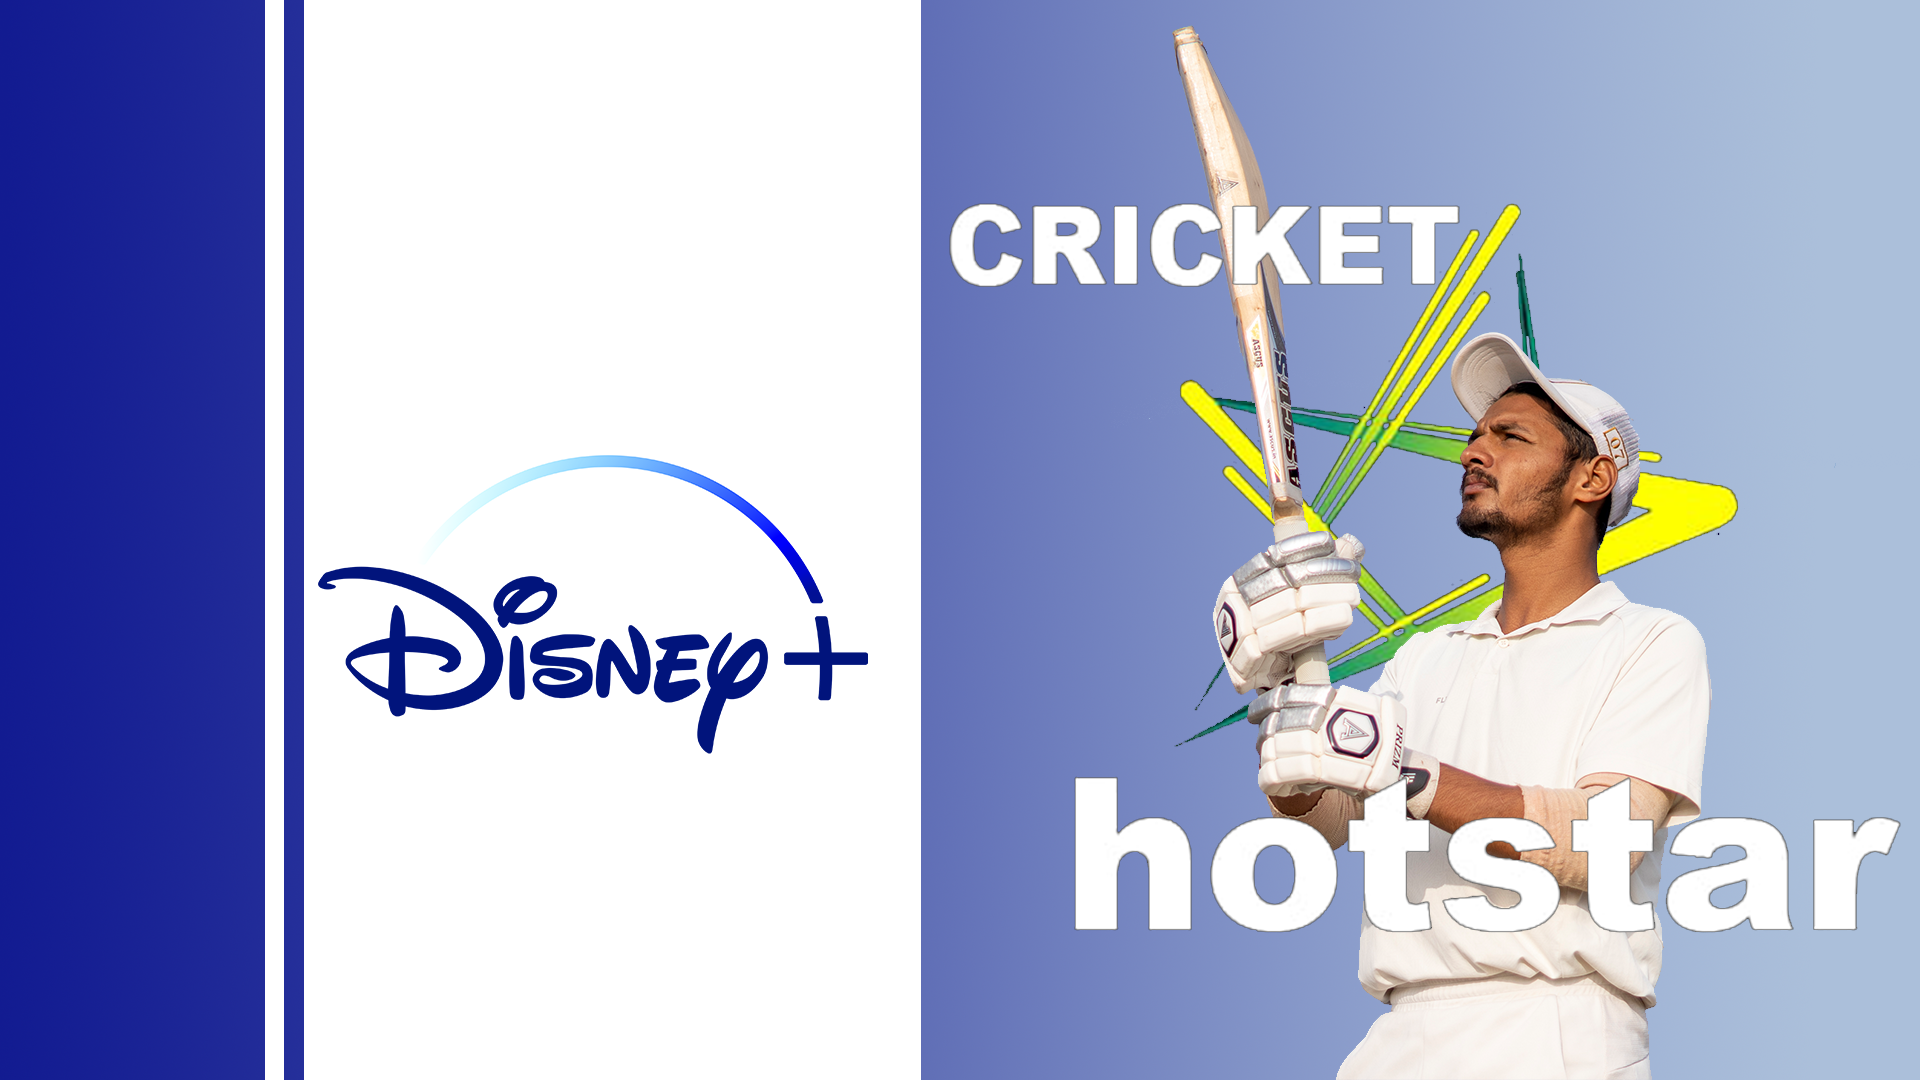 Disney+ Cricket Hotstar